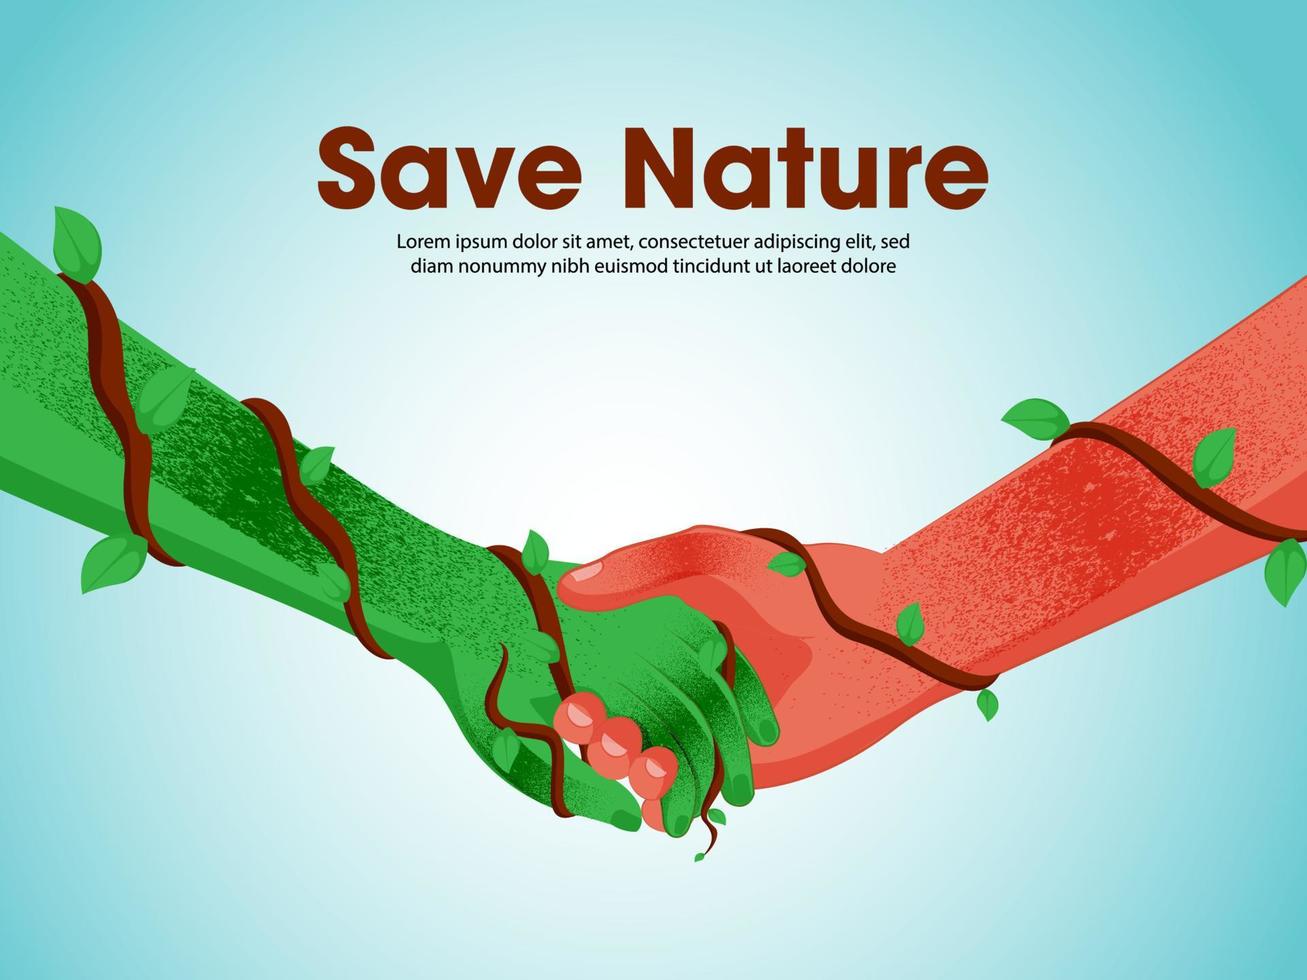 illustration av handskakning mellan mänsklig och grön hand på glansig himmel blå bakgrund för spara natur begrepp. vektor